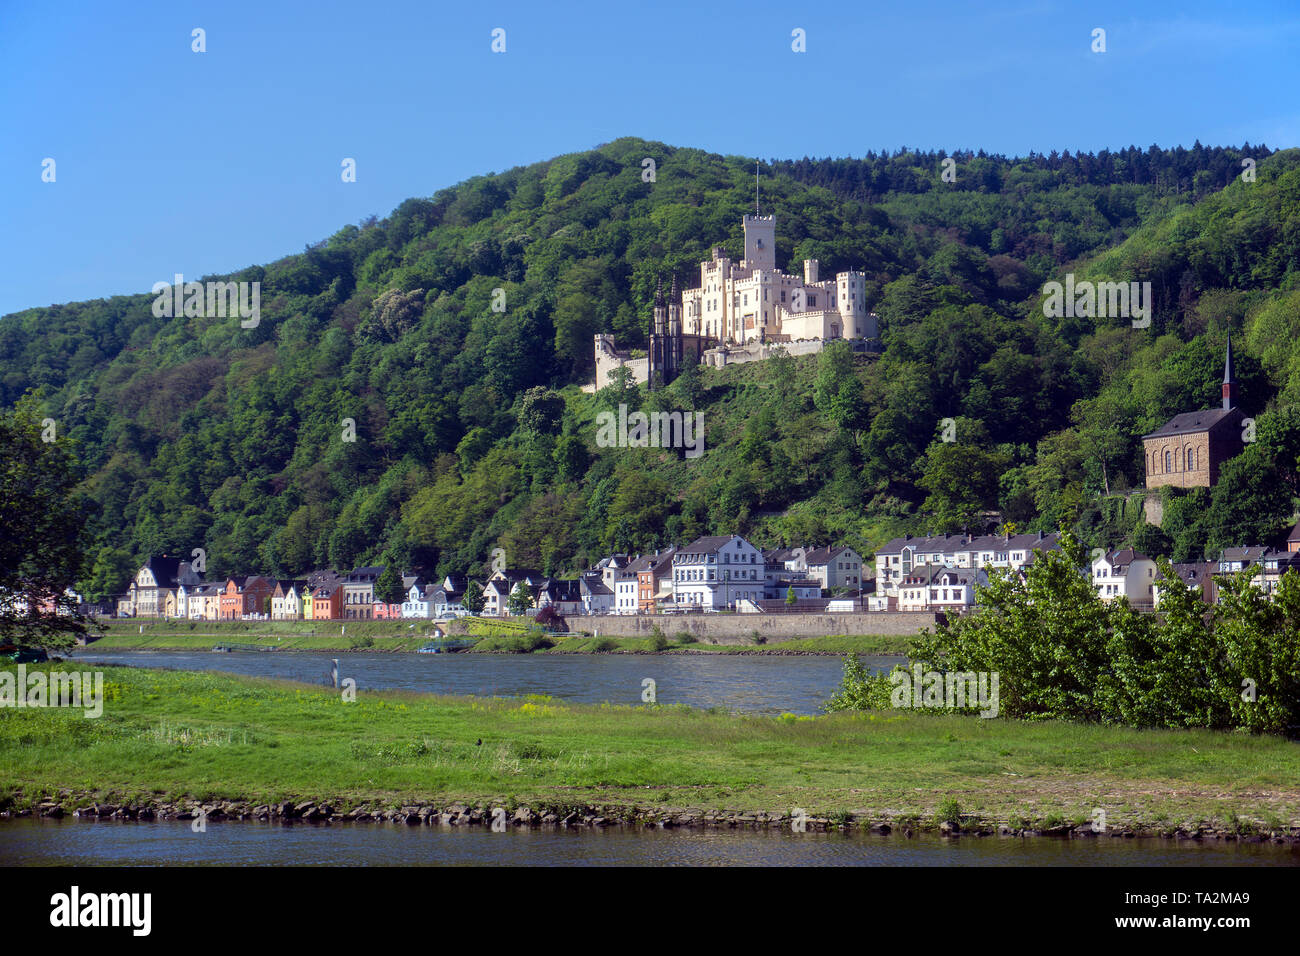 Schloss Stolzenfels, Gothic Revival Palast in der Stadt Koblenz, Unesco Welterbe Oberes Mittelrheintal, Rheinland-Pfalz, Deutschland Stockfoto